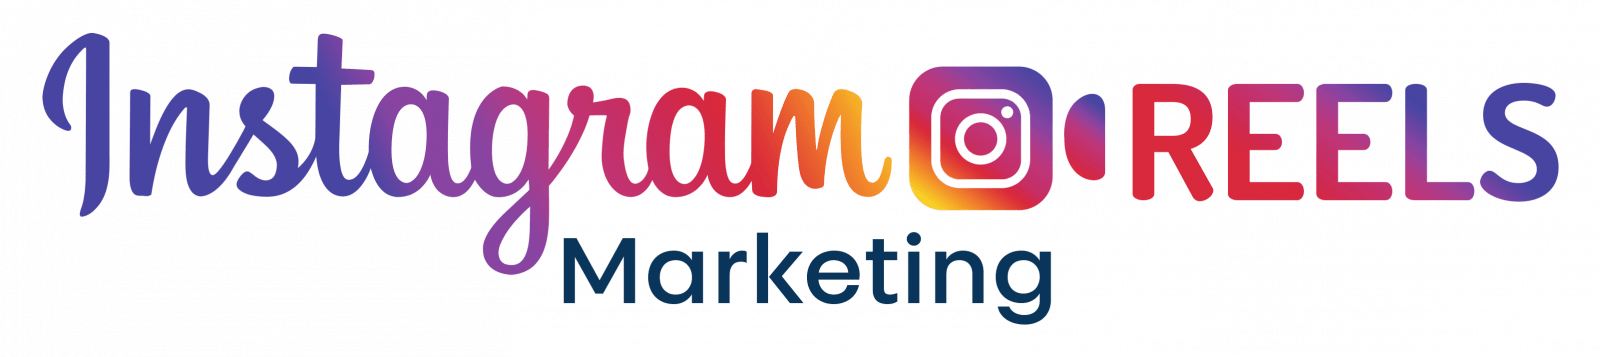 Instagram Reels Marketing Review - Deep Analysis [2020] - Sales force